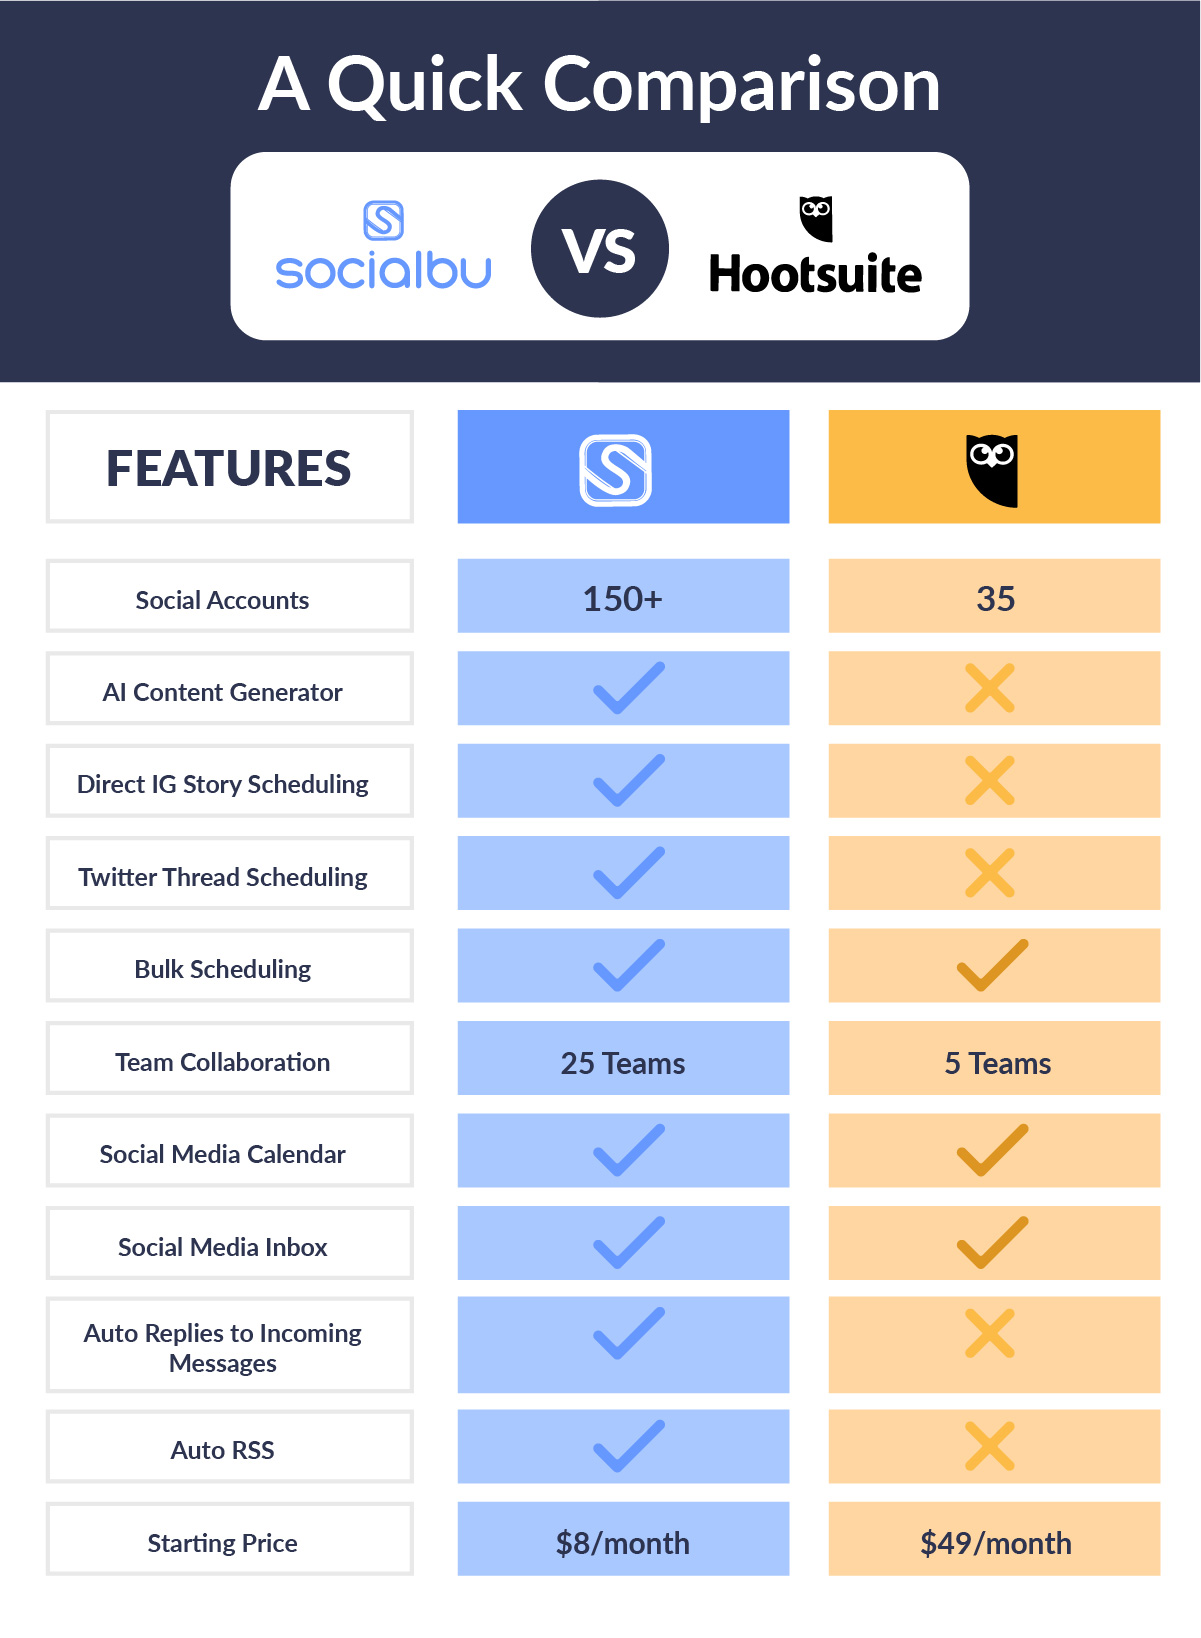 socialbu vs hootsuite